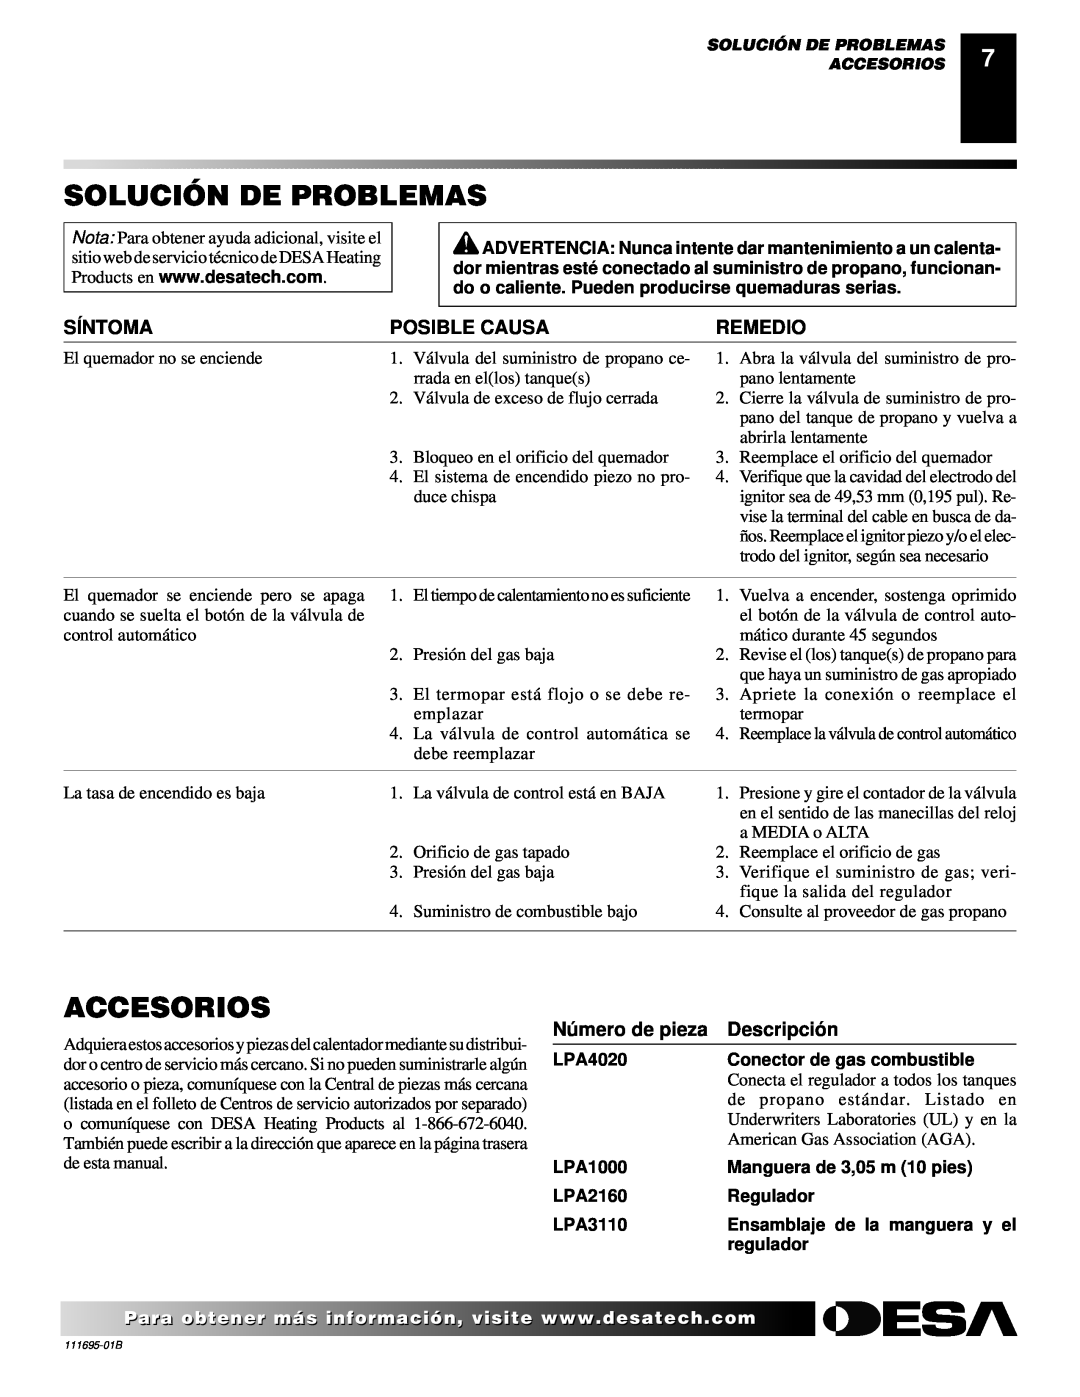 Desa PROPANE CONSTRUCTION CONVECTION HEATER owner manual Solución De Problemas, Accesorios, Síntoma, Posible Causa, Remedio 